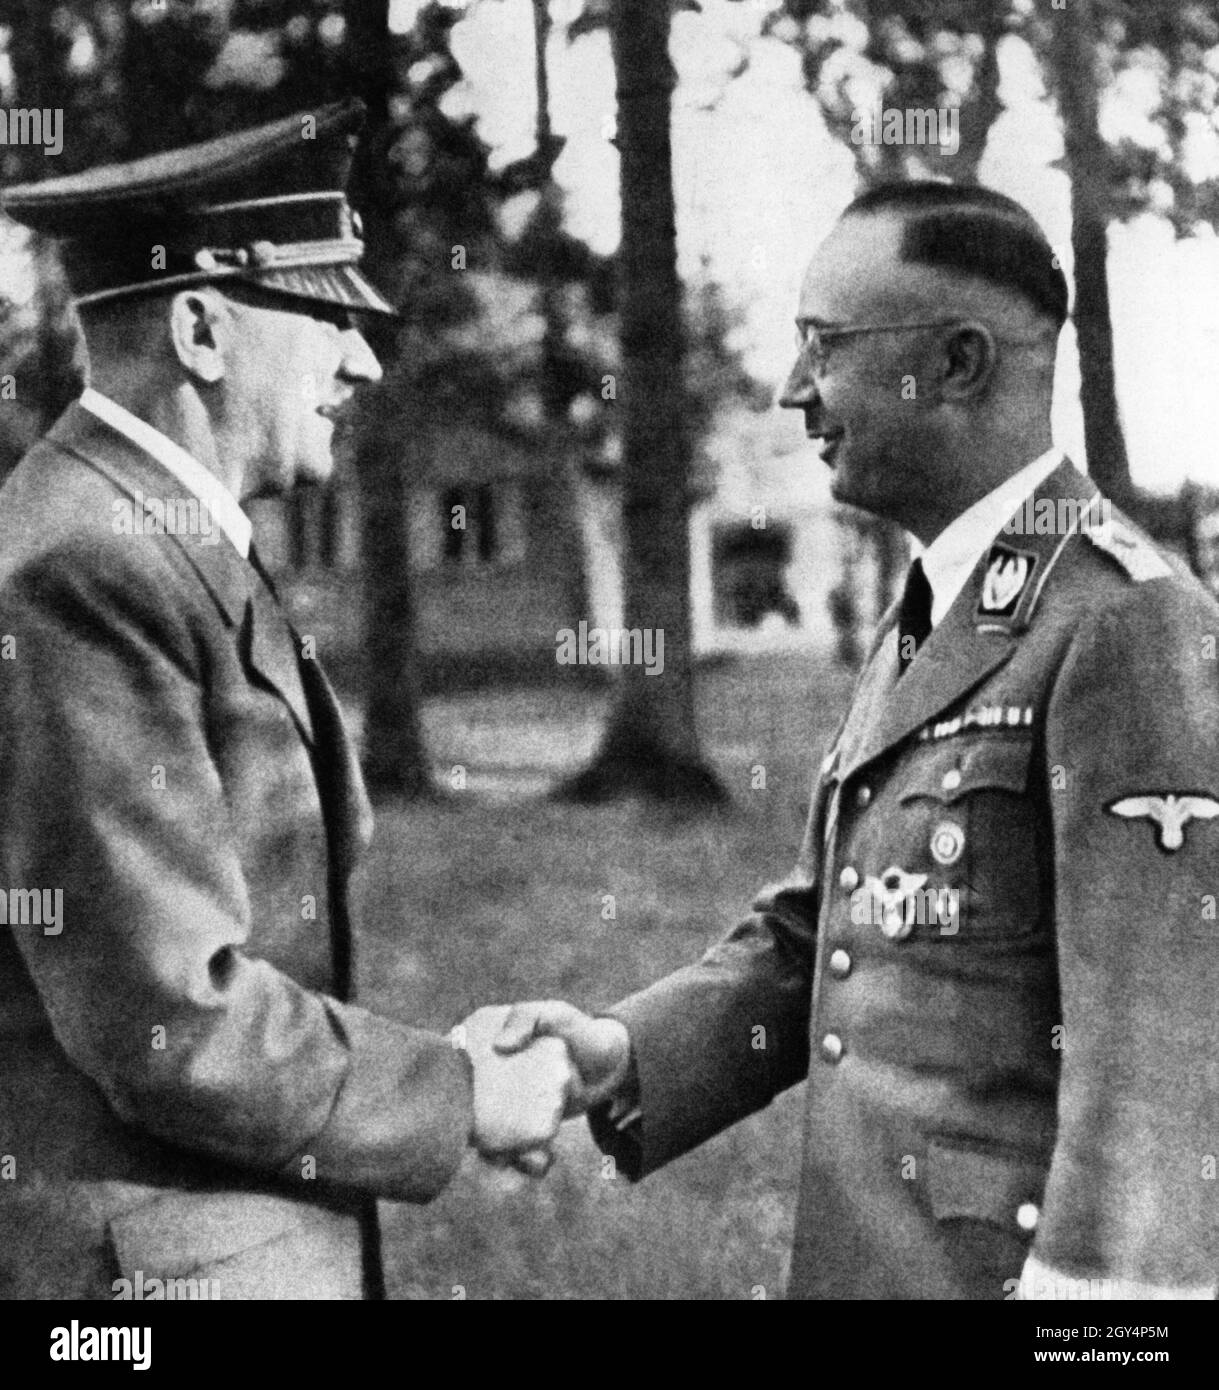 Nell'ottobre del 1943, Adolf Hitler dà il benvenuto Reichsführer alla SS Heinrich Himmler nella sua sede centrale di Wolfsschanze nella Prussia orientale, dove ha ordinato a tutti i galli dell'NSDAP un incontro di Führer dopo la sconfitta a Stalingrad e le battute d'arresto in Africa. [traduzione automatizzata] Foto Stock